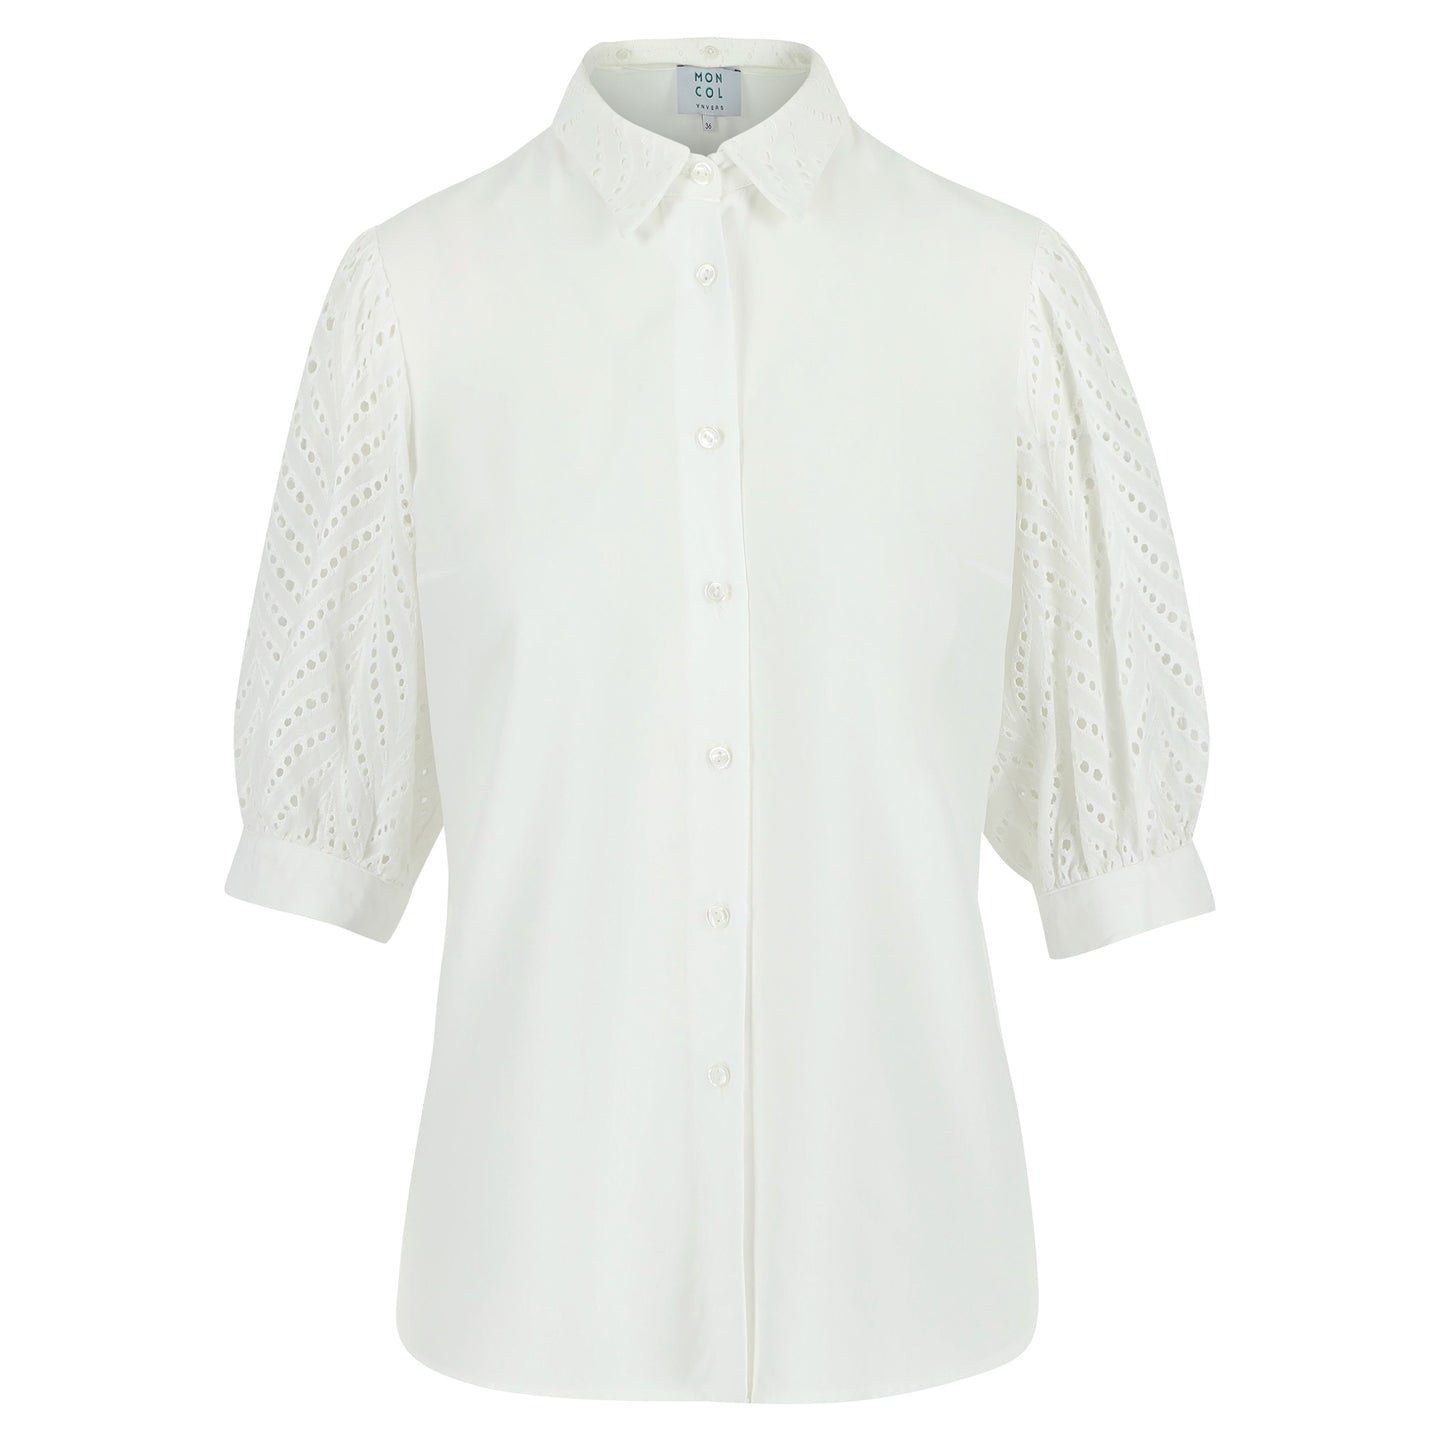 Boch blouse White lace - Last size: 44